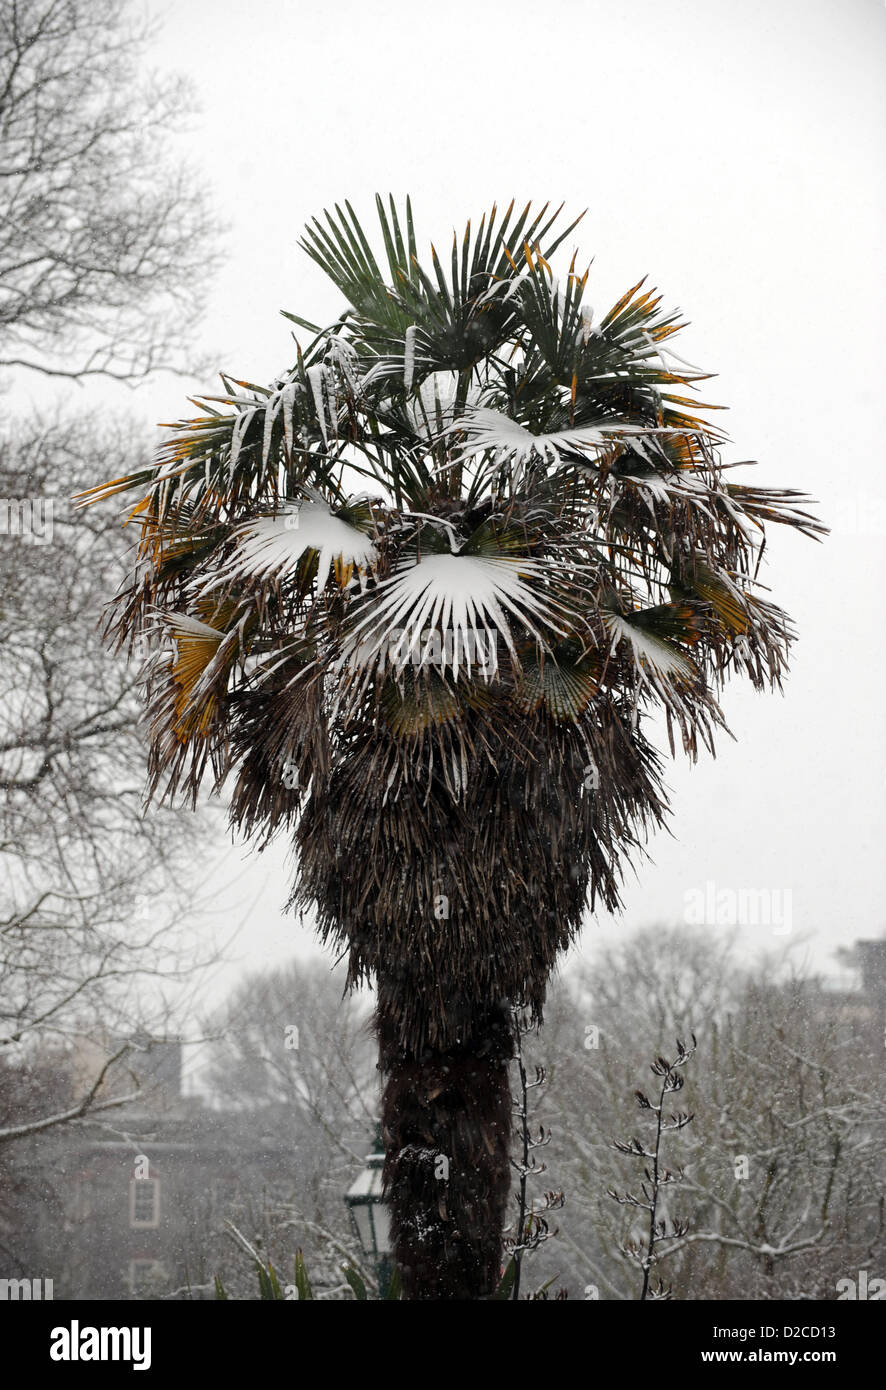 Brighton Sussex, Reino Unido el 20 de enero de 2013 - una palmera cubierta de nieve en Brighton esta mañana fotografía tomada por Simon Dack. Alamy Live News Foto de stock